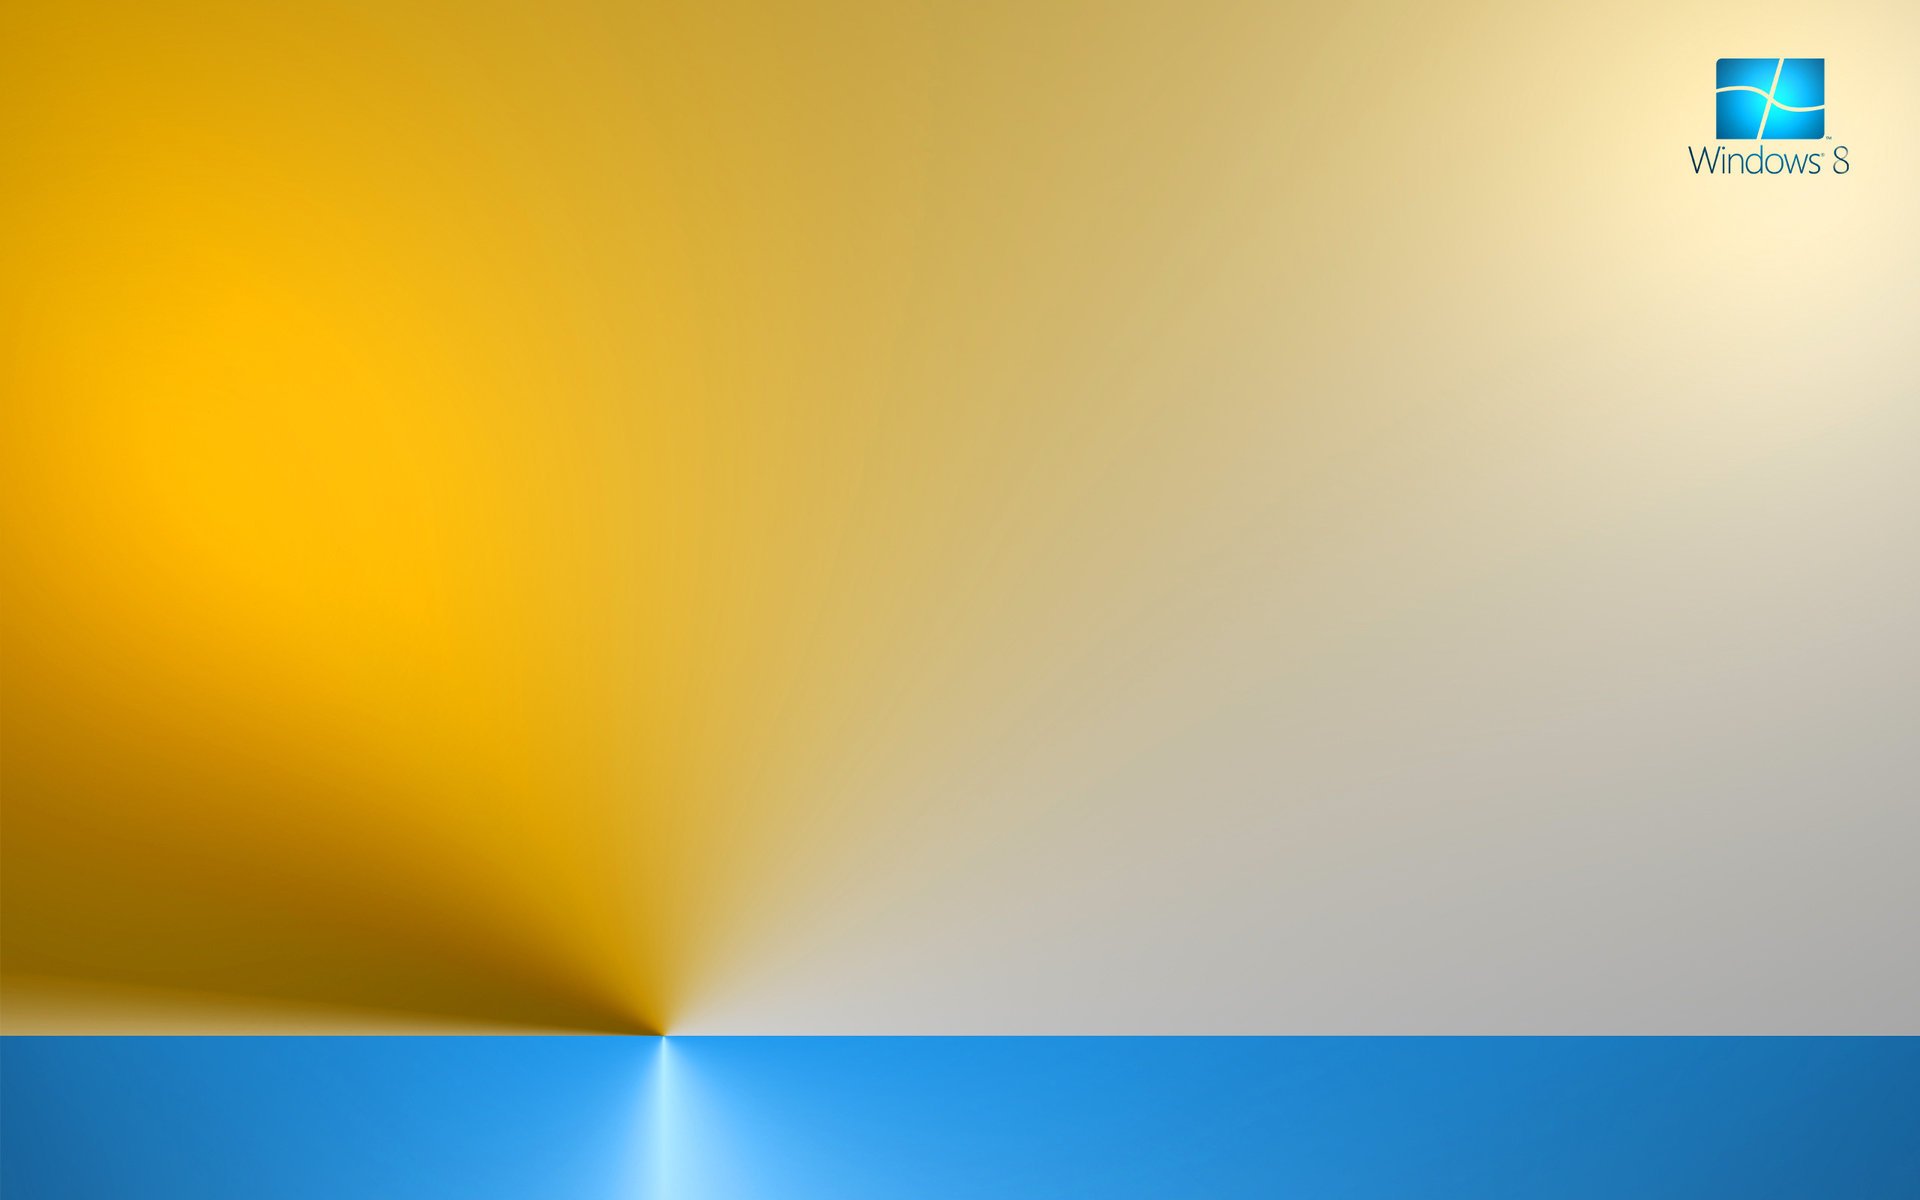 Эмблема виндоус операционной системы на жёлтом и сером фоне с голубой полосой